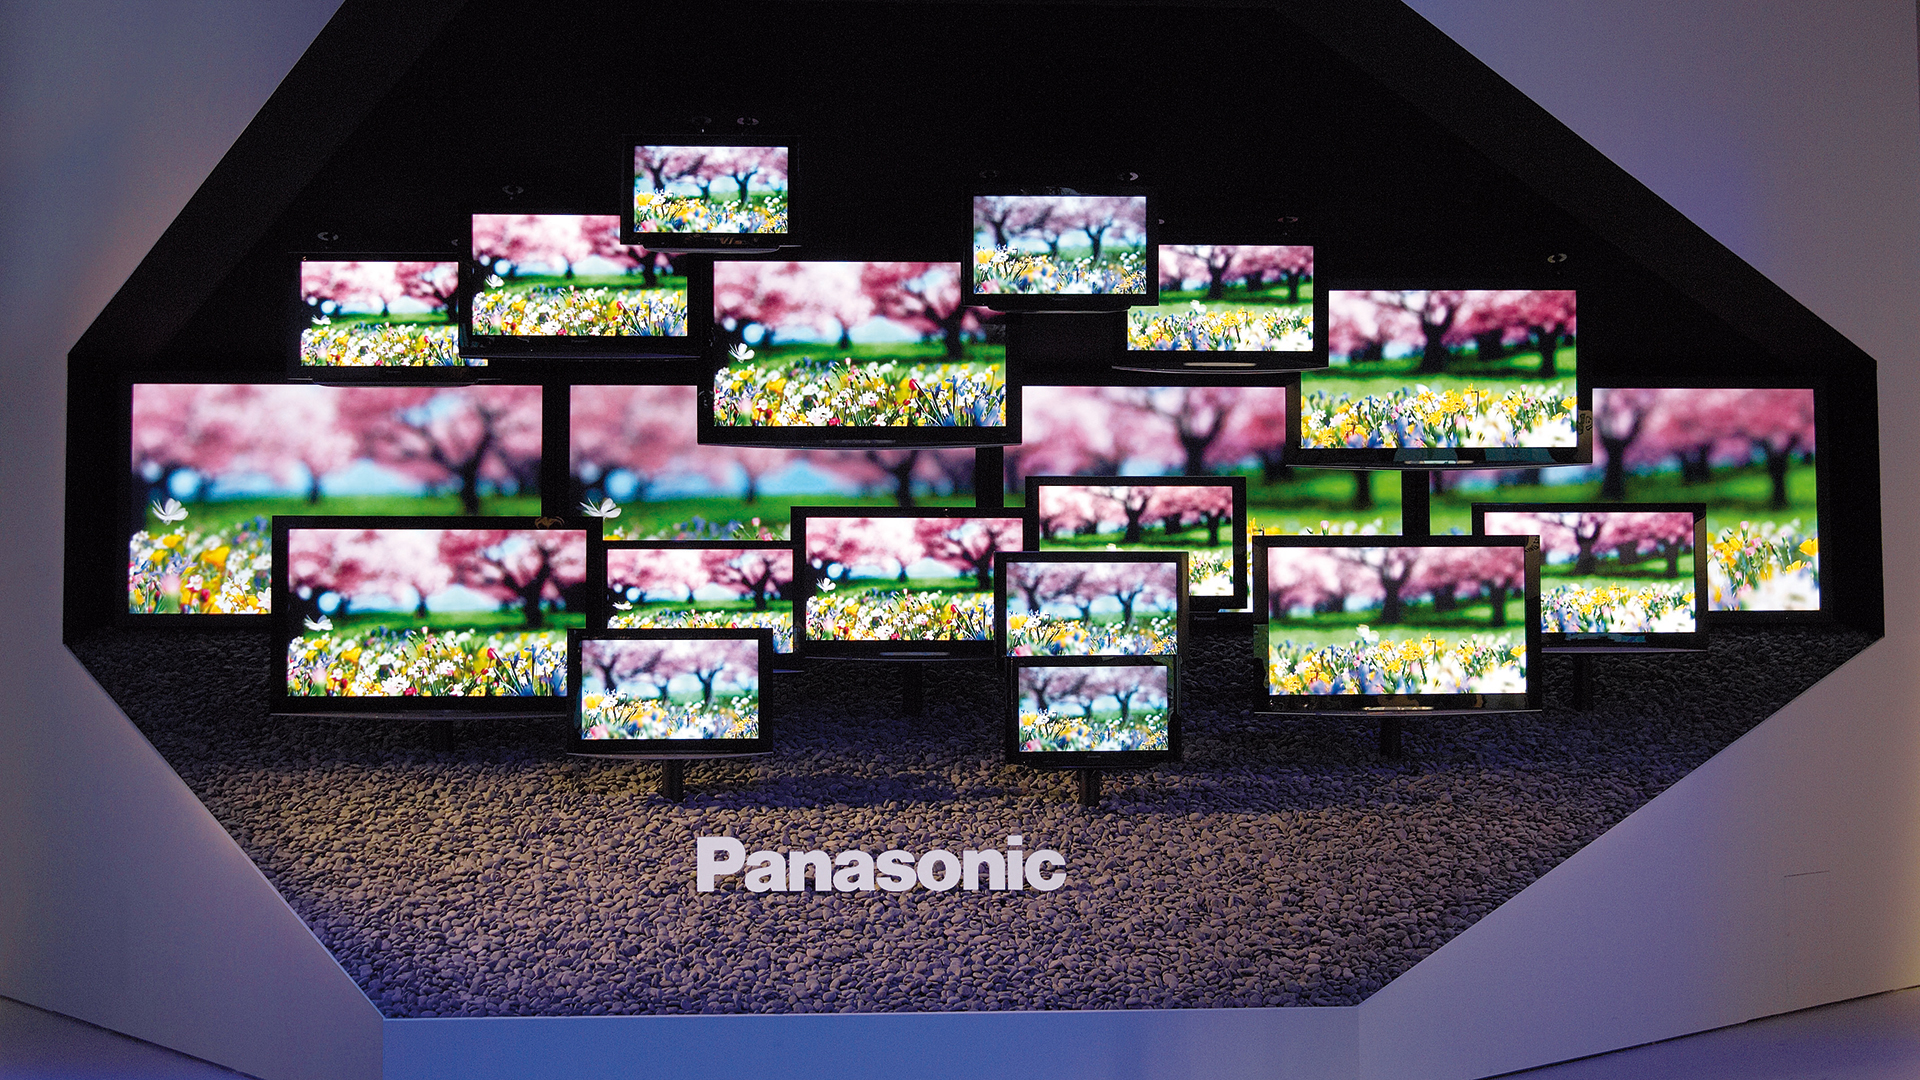 Dart iszeniert den Messestand von Panasonic auf der IFA 2008